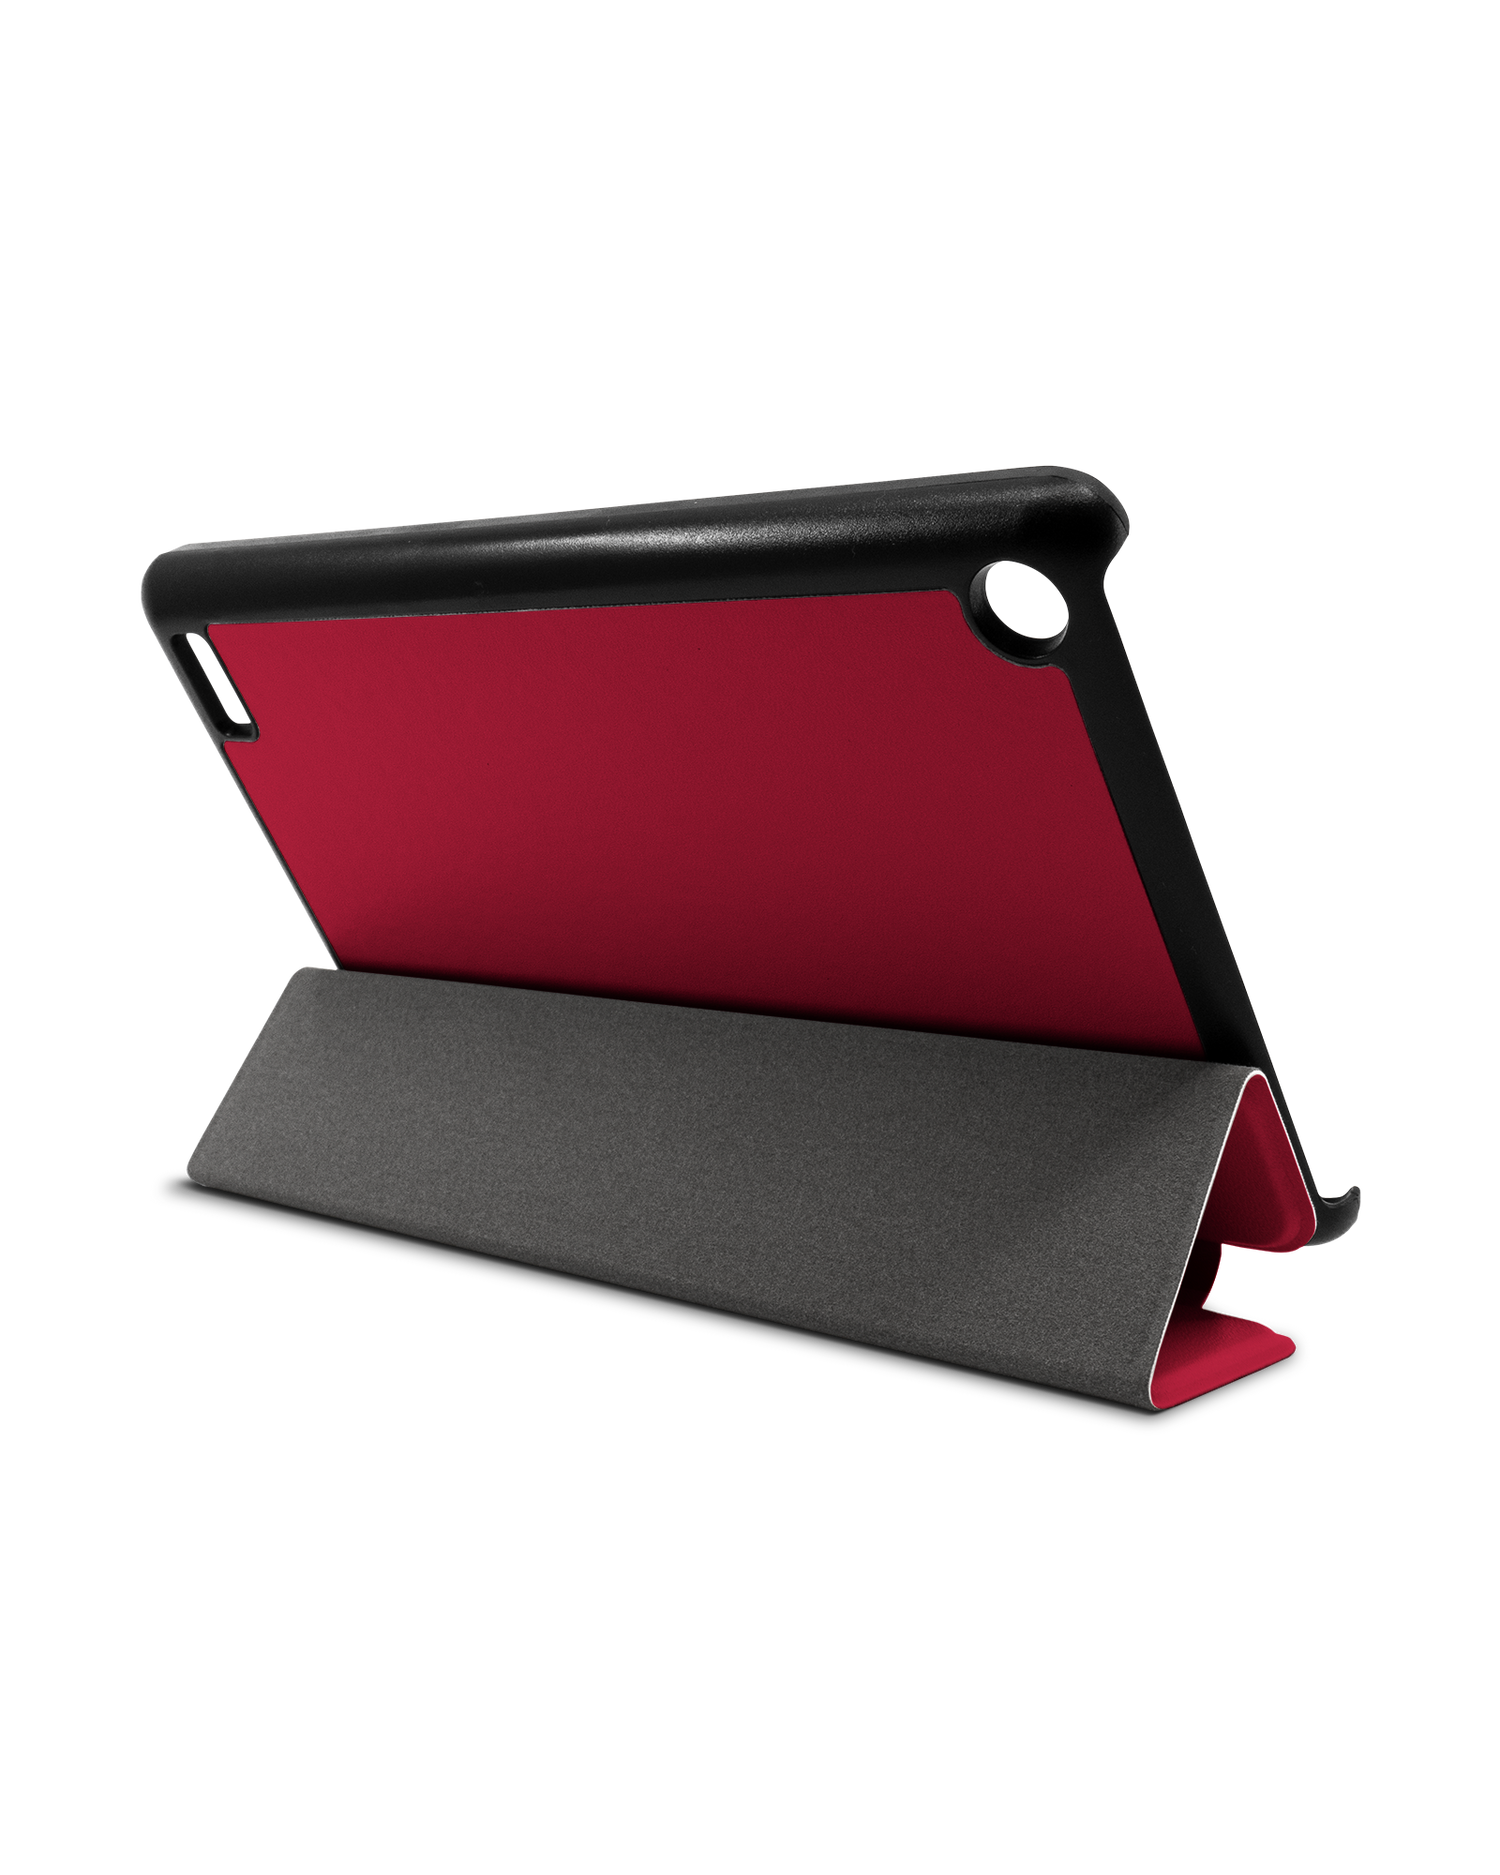 RED Tablet Smart Case für Amazon Fire 7: Aufgestellt im Querformat